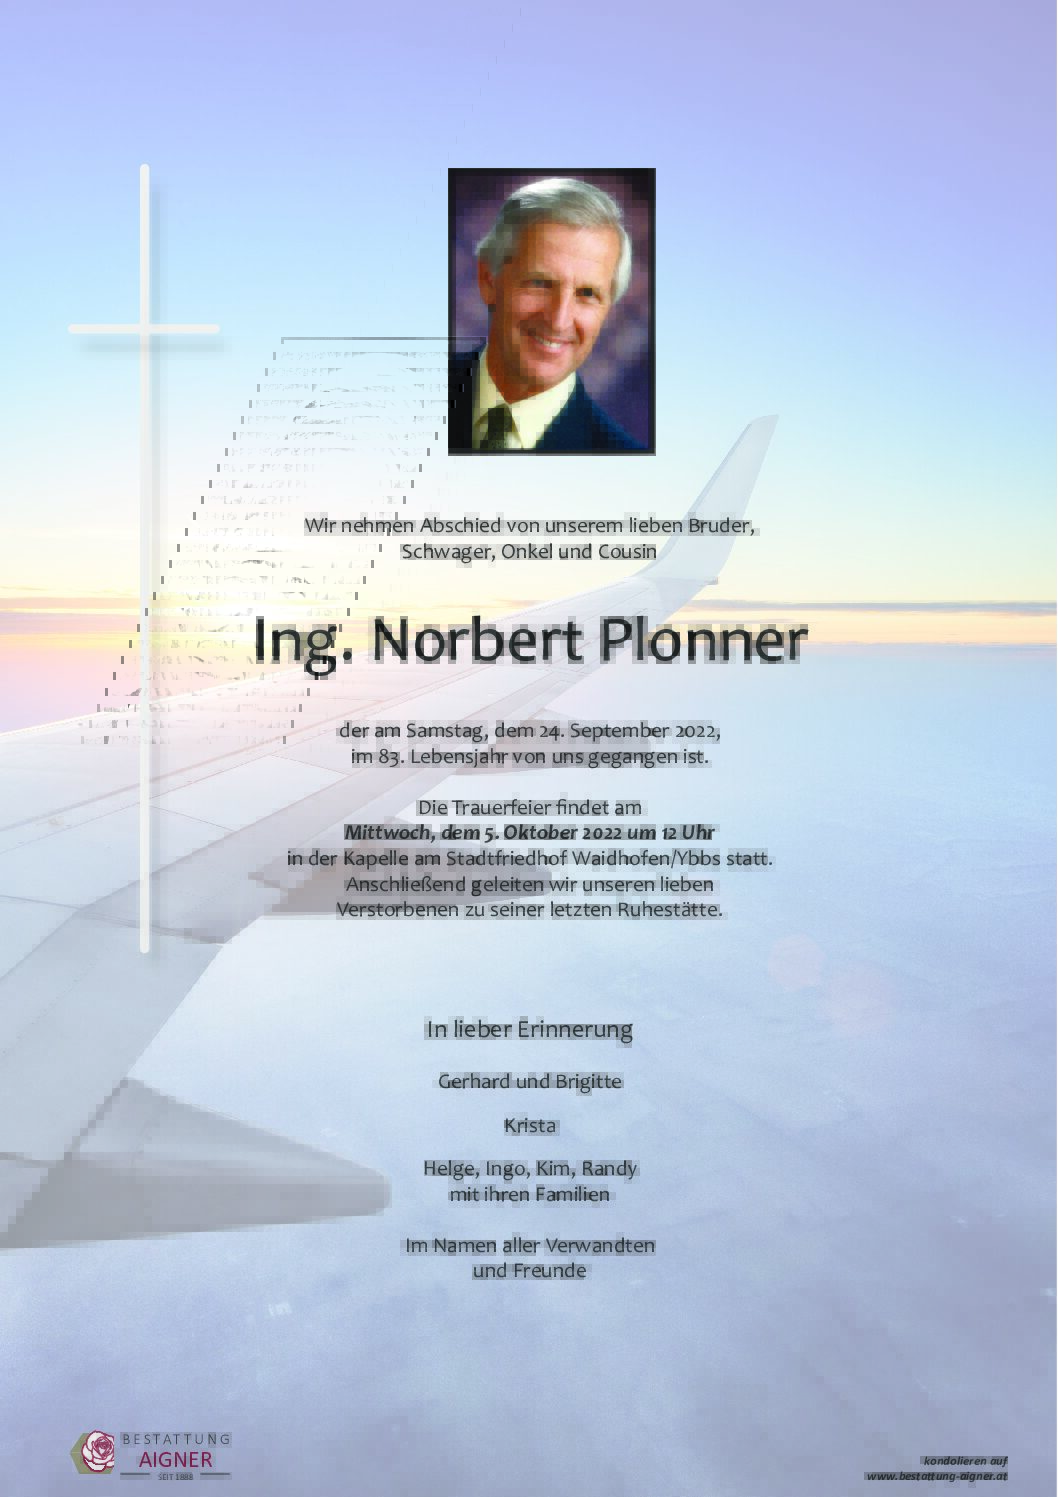 Ing. Norbert Plonner